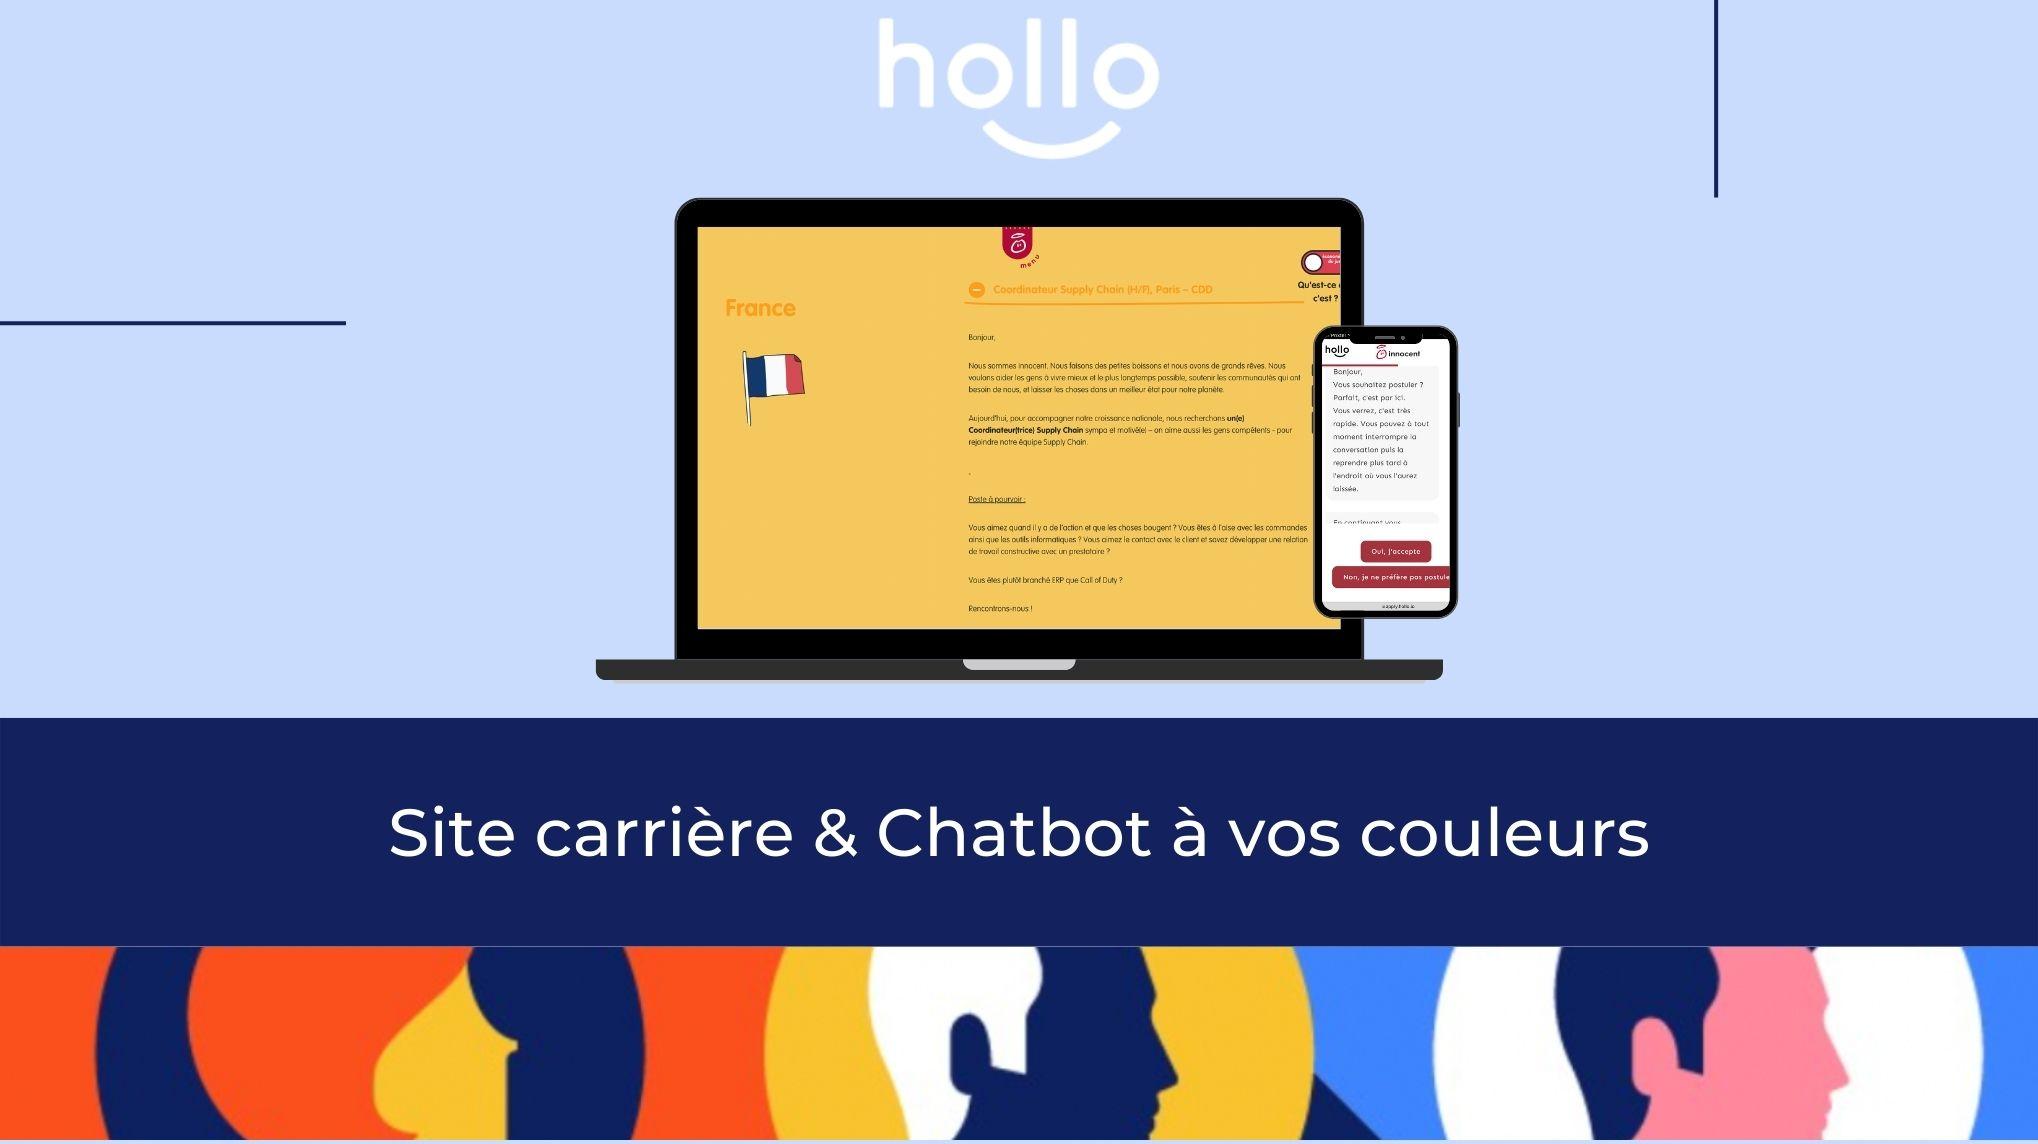 Hollo - Site carrière & Chatbot